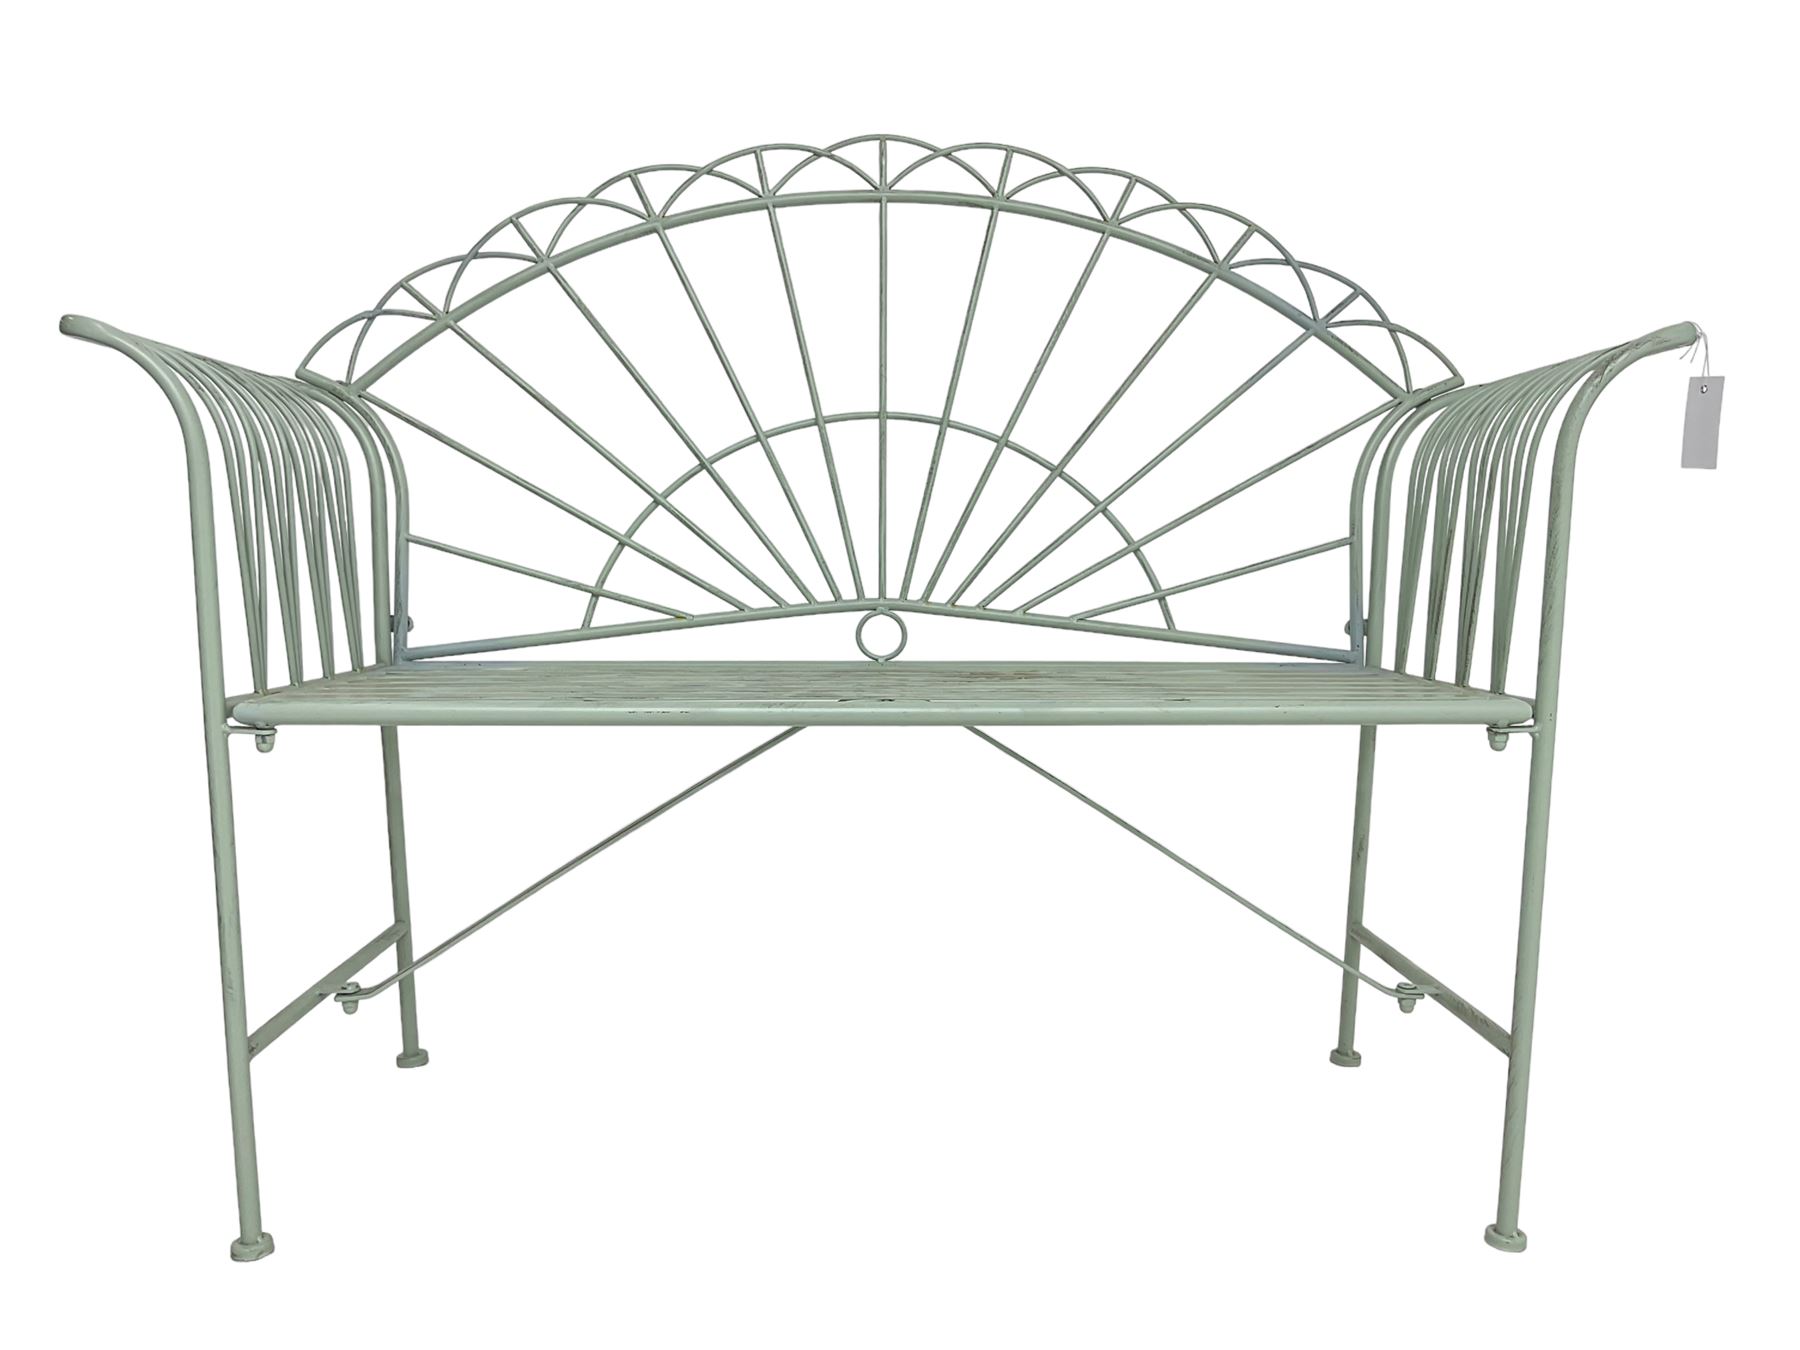 Regency design wrought metal bench